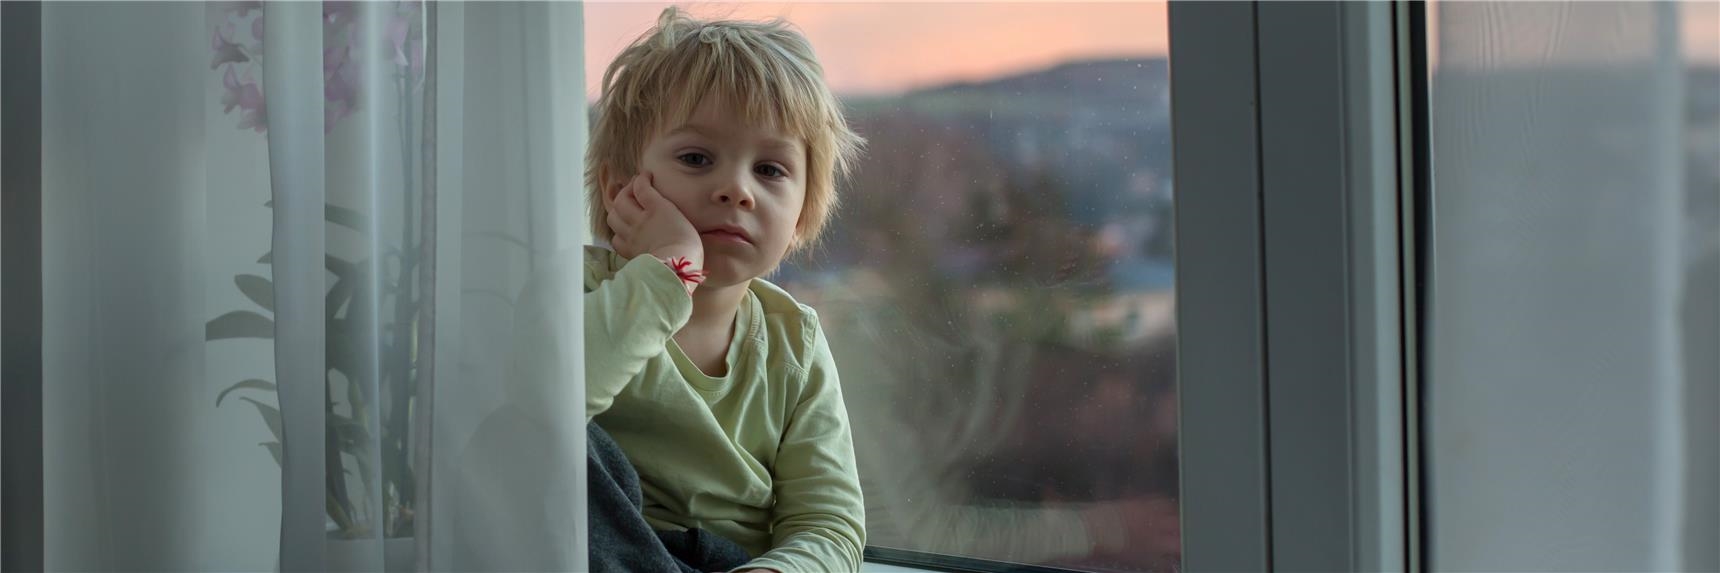 Ein Junge sitzt auf einer Fensterbank